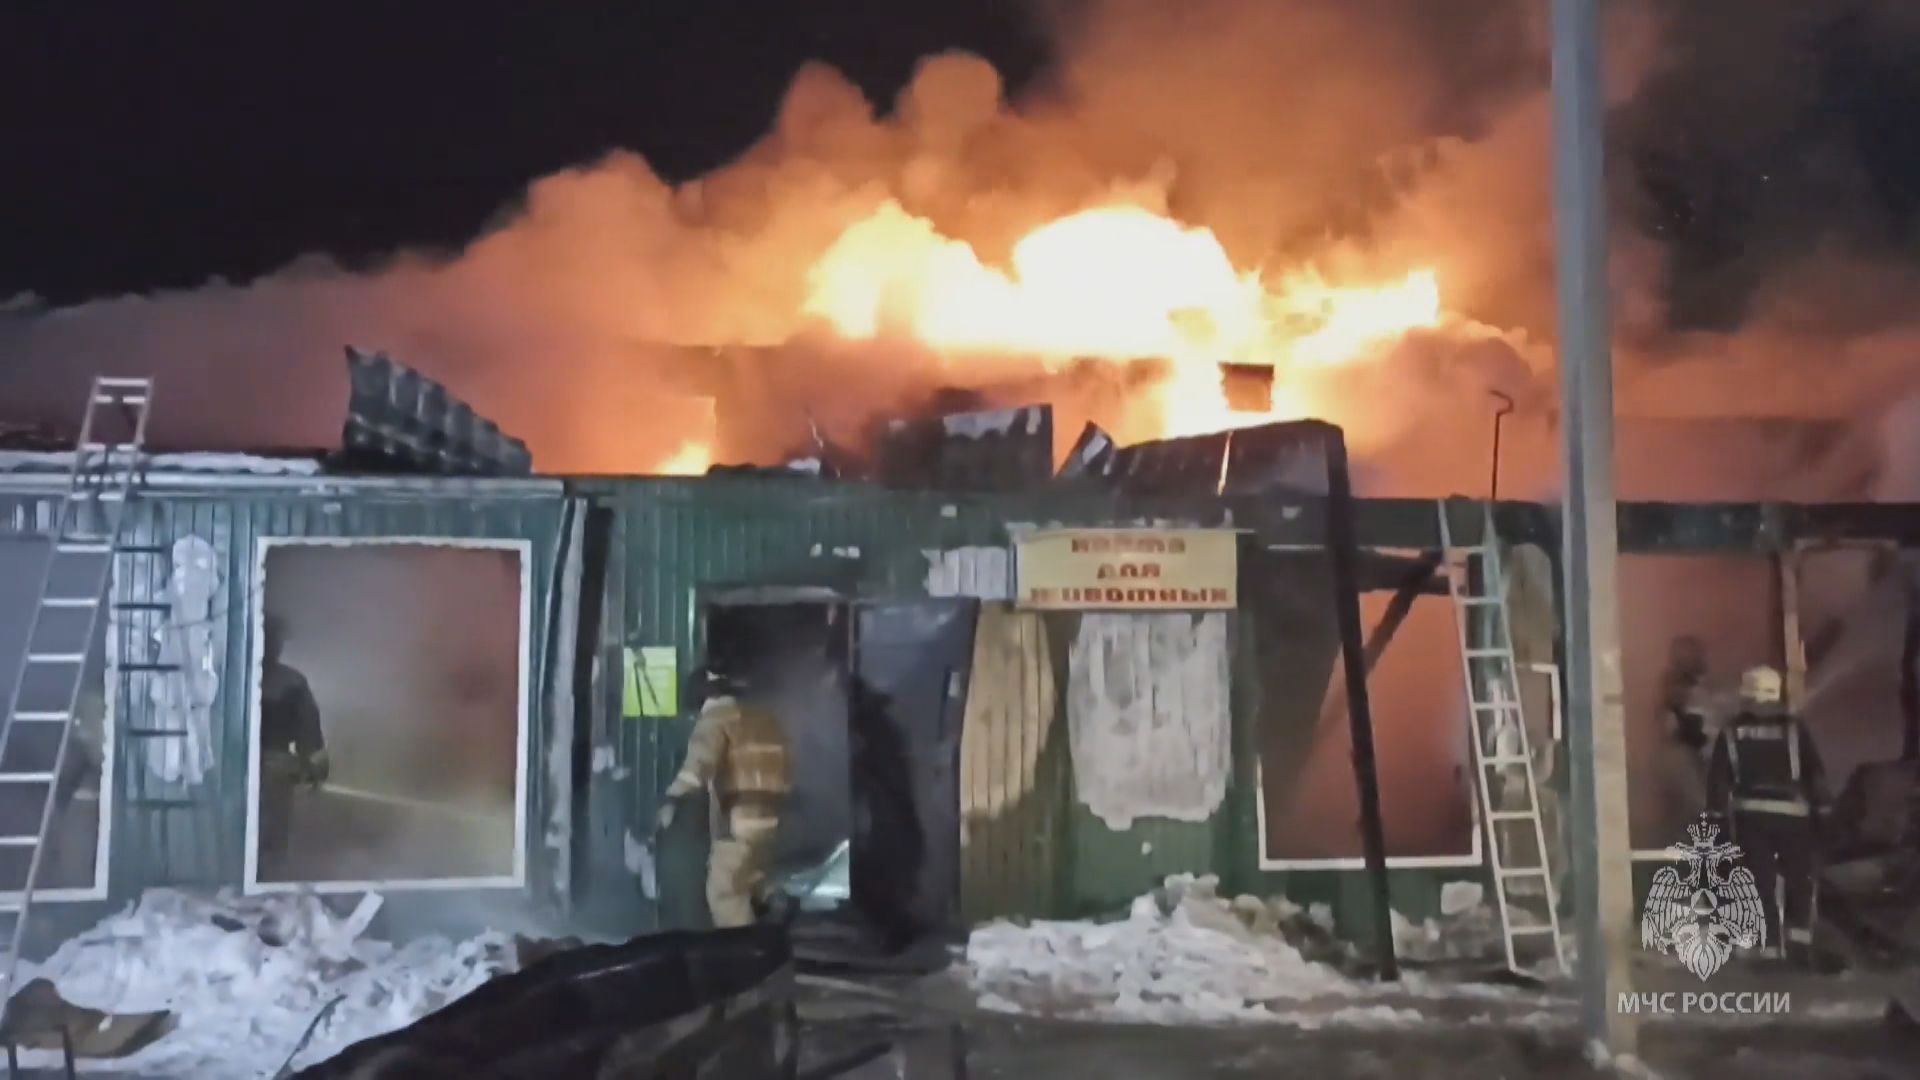 俄羅斯安老院大火至少20死6傷